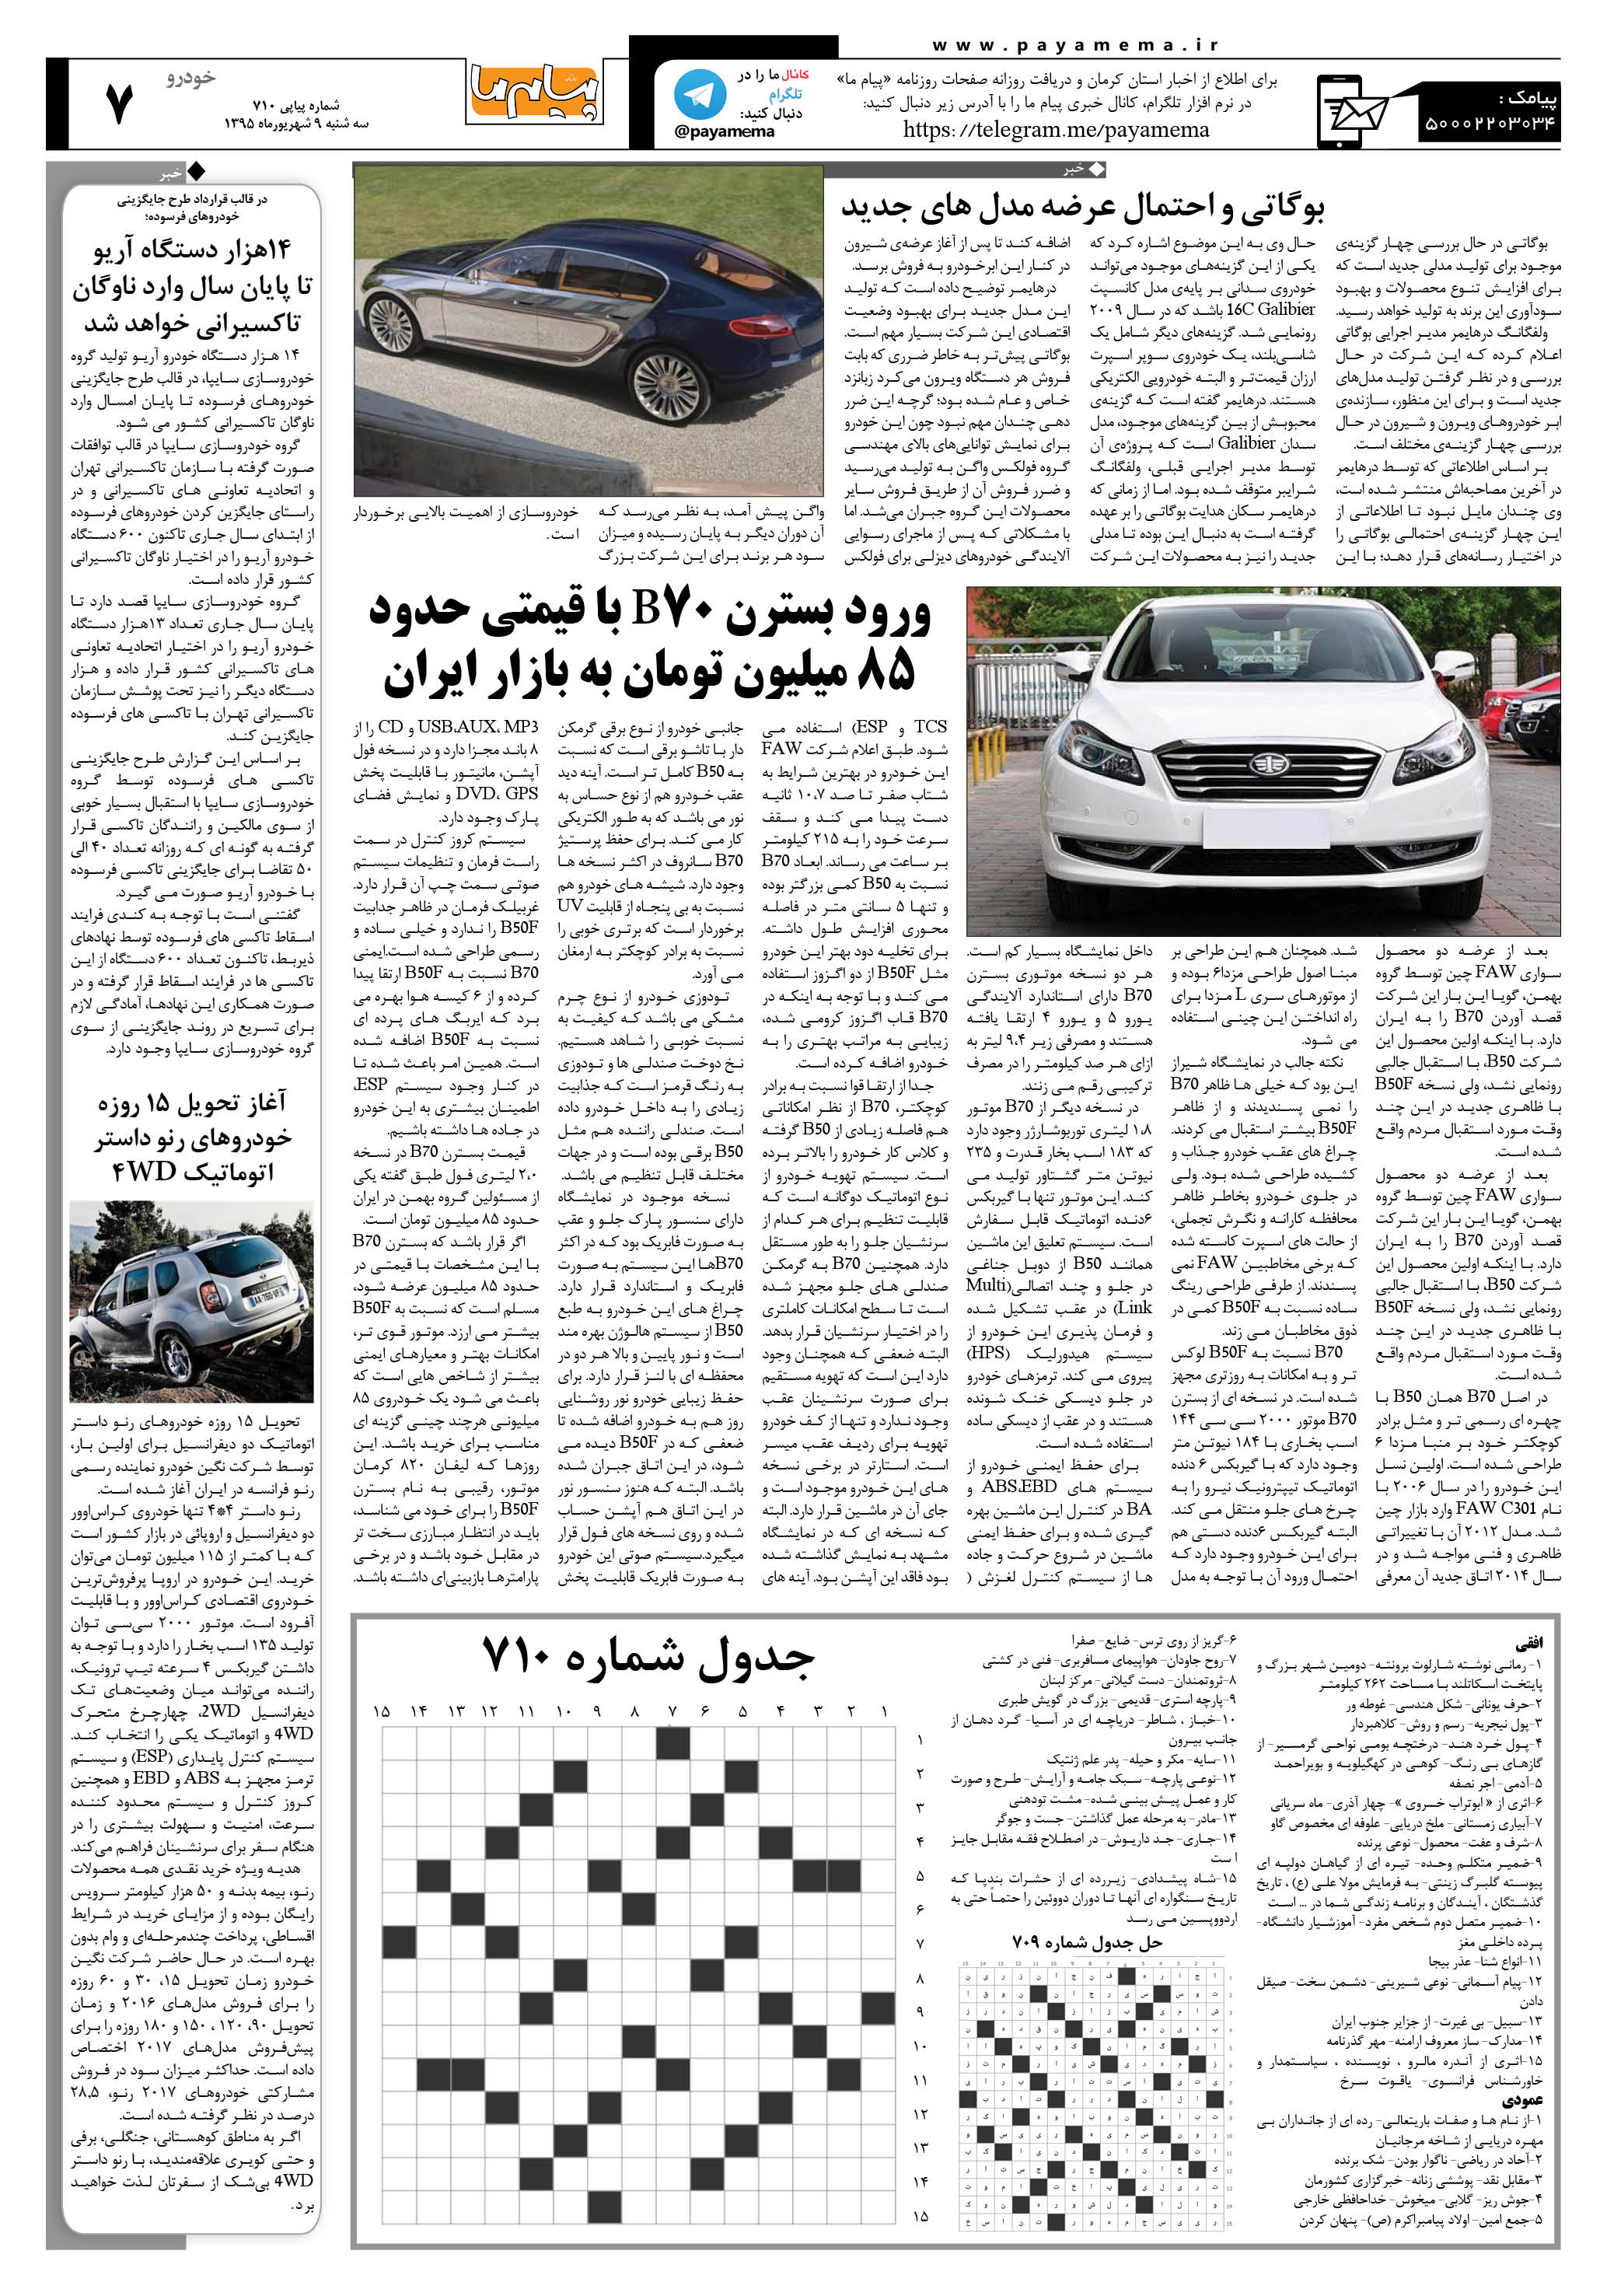 صفحه خودرو شماره 710 روزنامه پیام ما